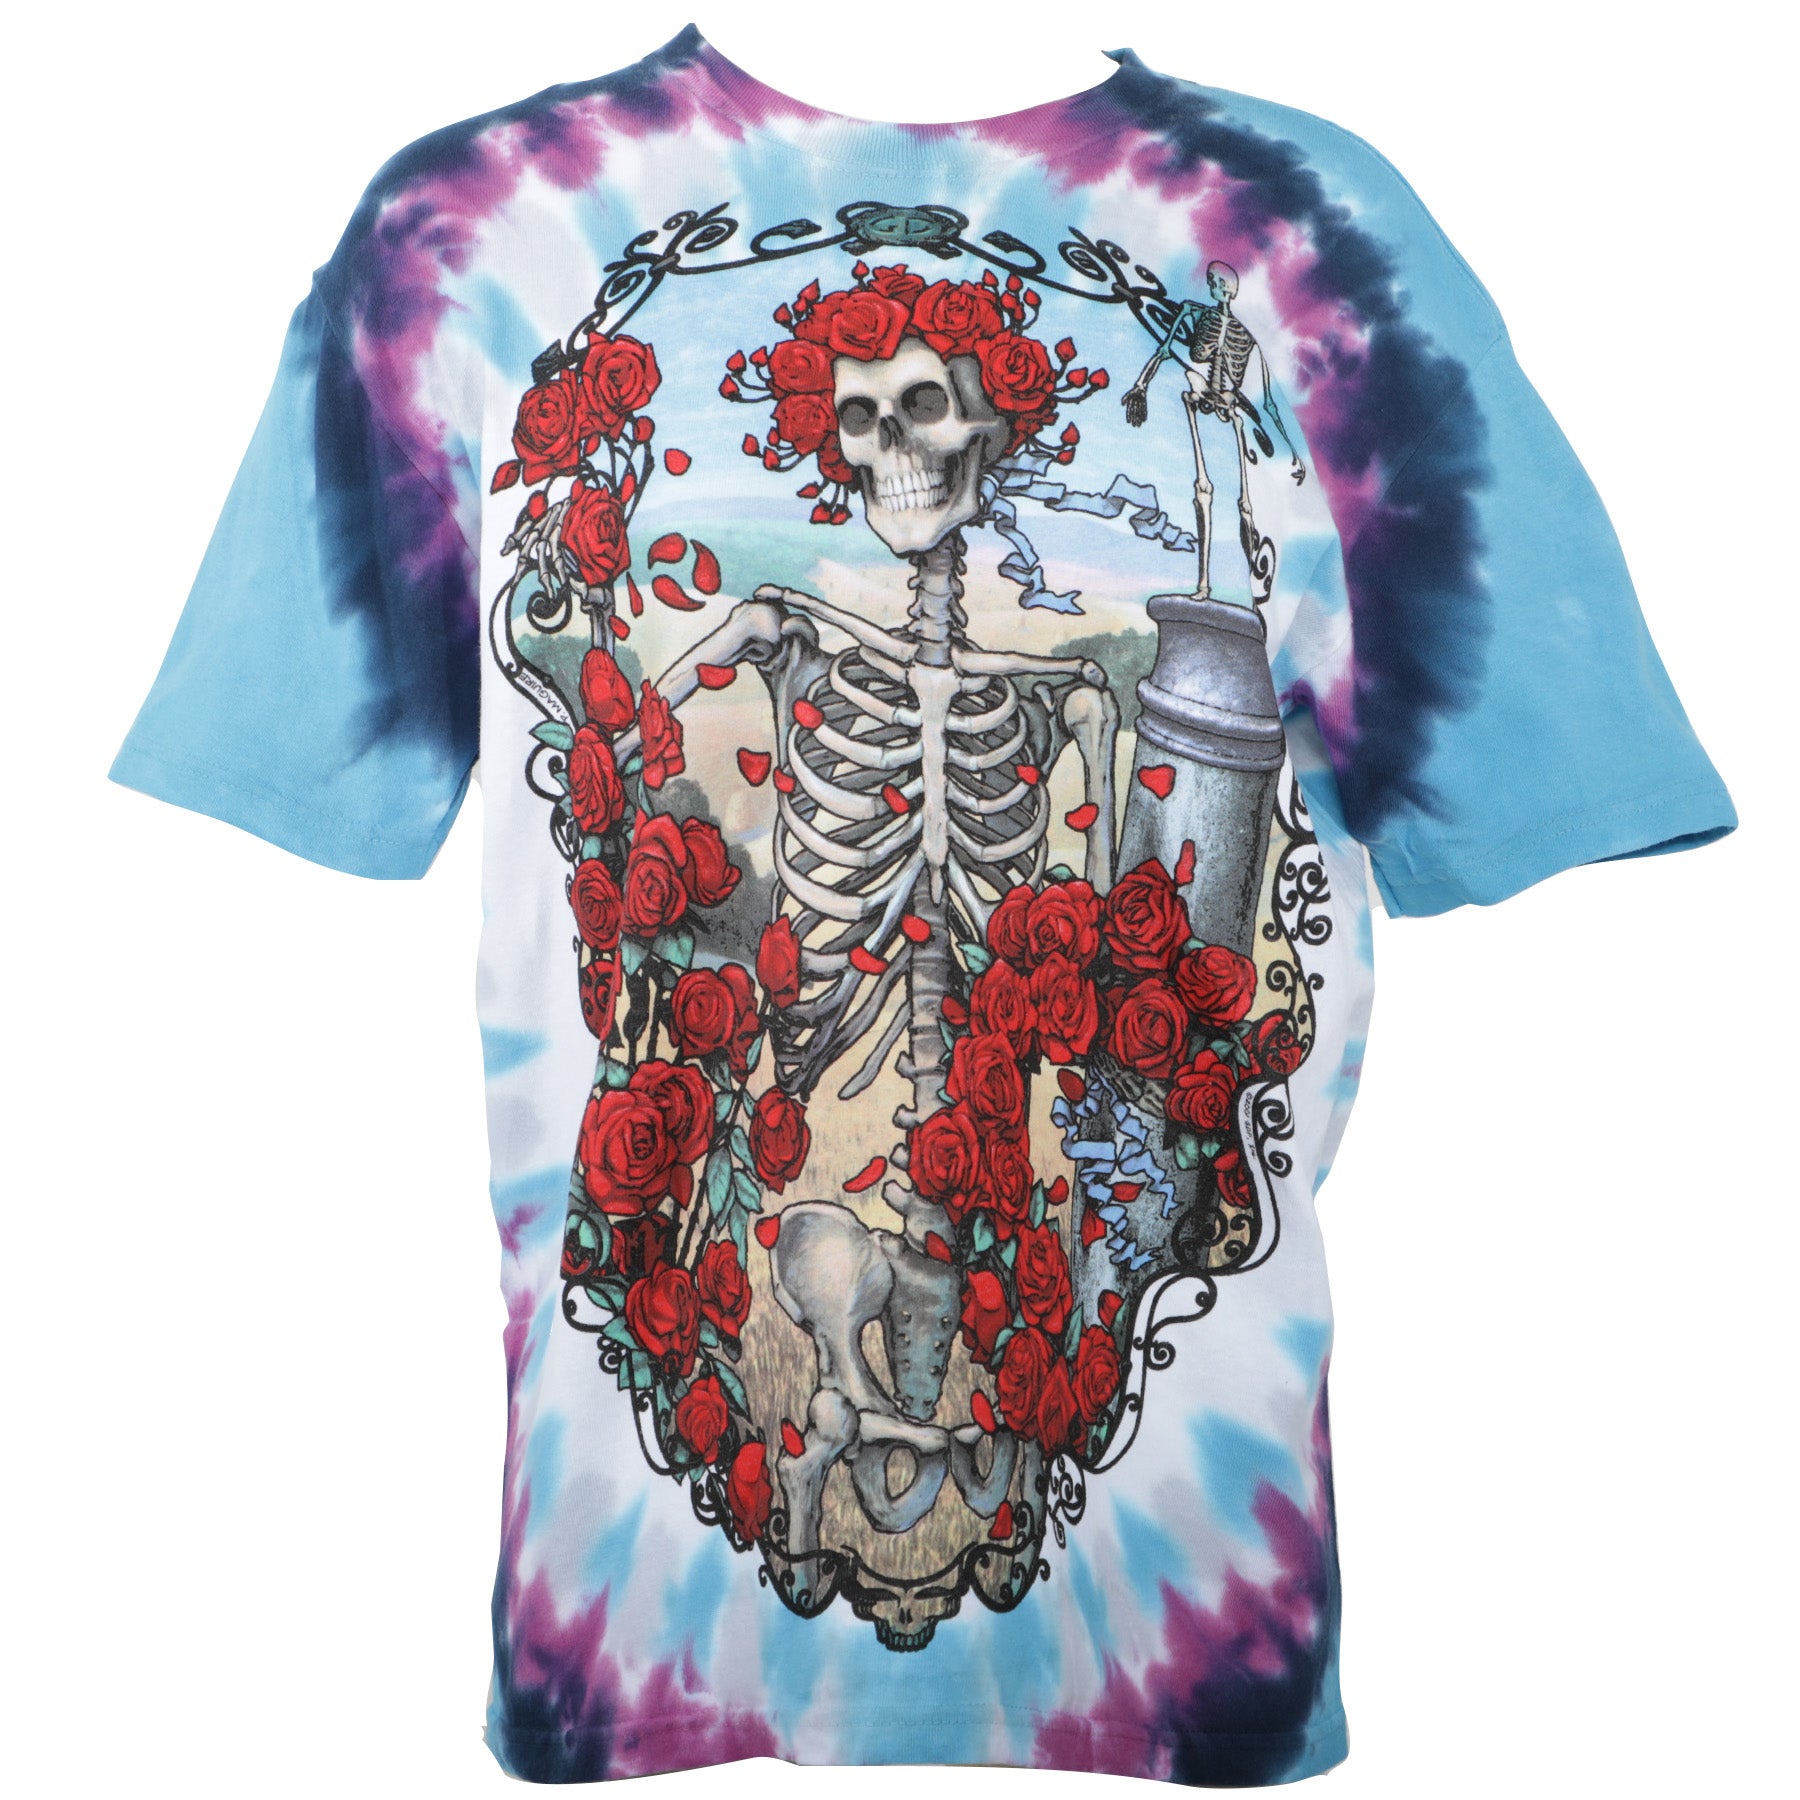 Grateful Dead, Shirts, Vintage Grateful Dead Liquid Blue Skeleton Shirt